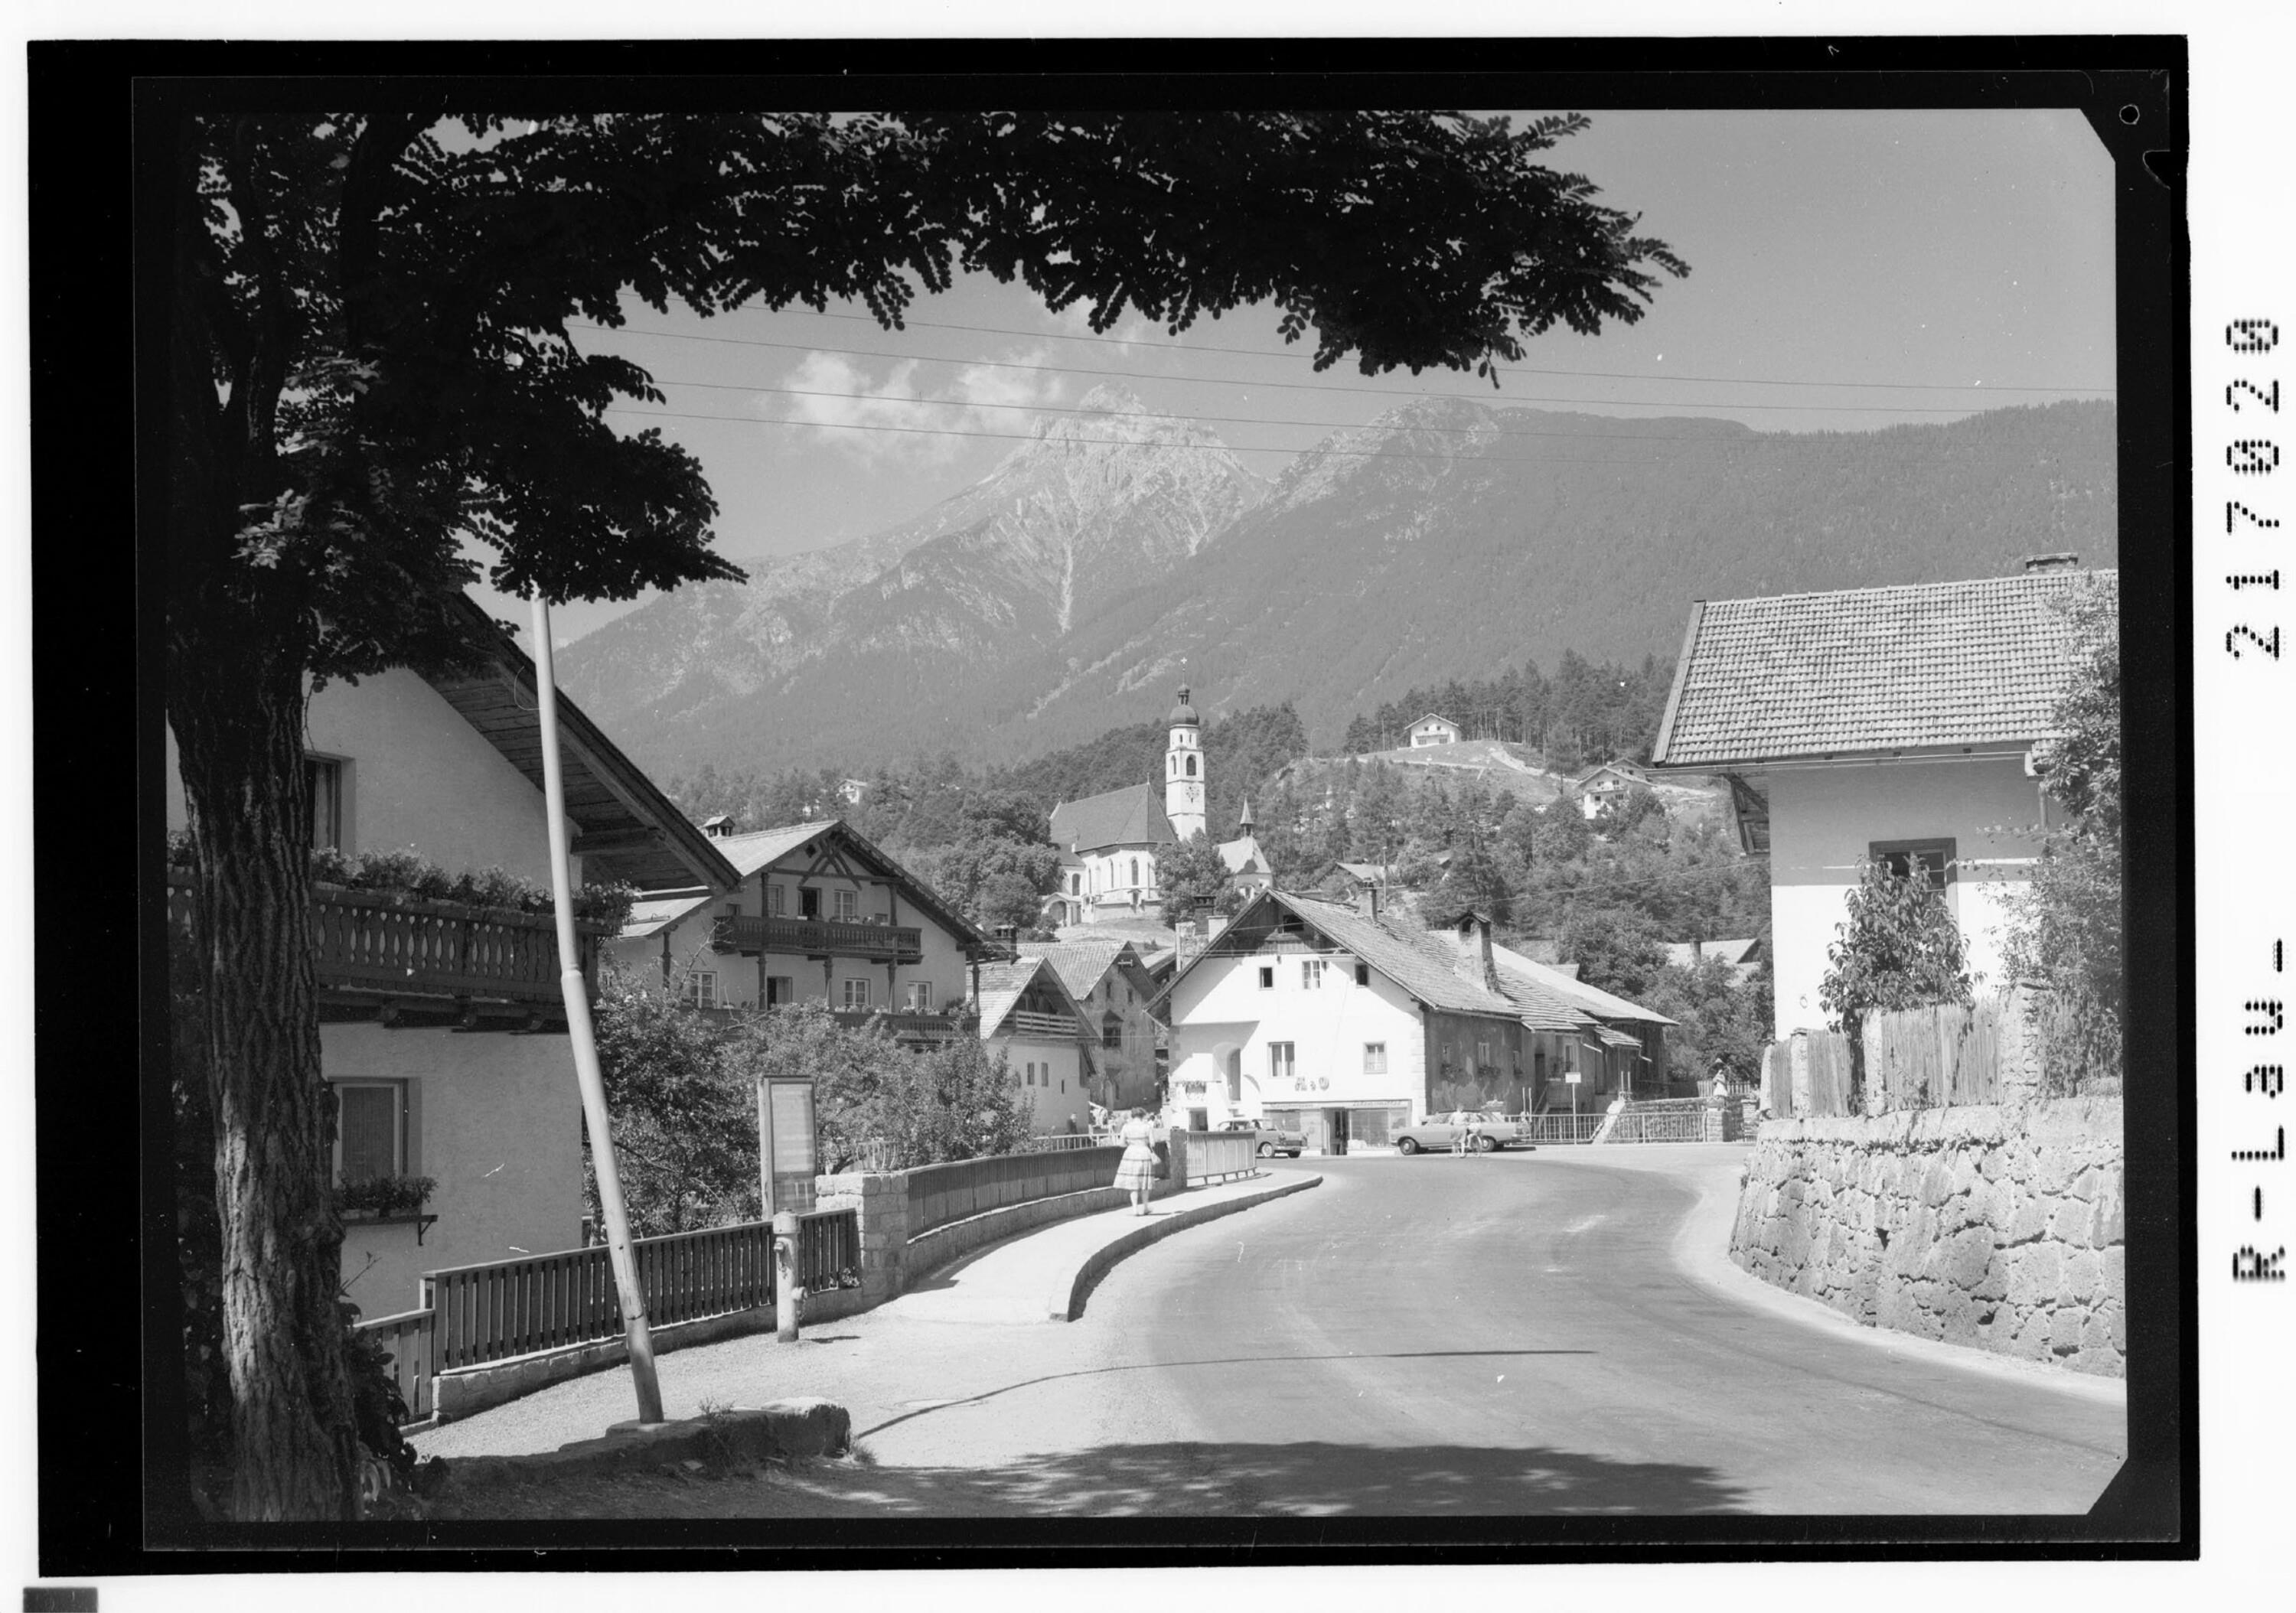 Tarrenz 838 m, Dorfplatz gegen Platteinspitze 2639 m, Oberinntal / Tirol></div>


    <hr>
    <div class=